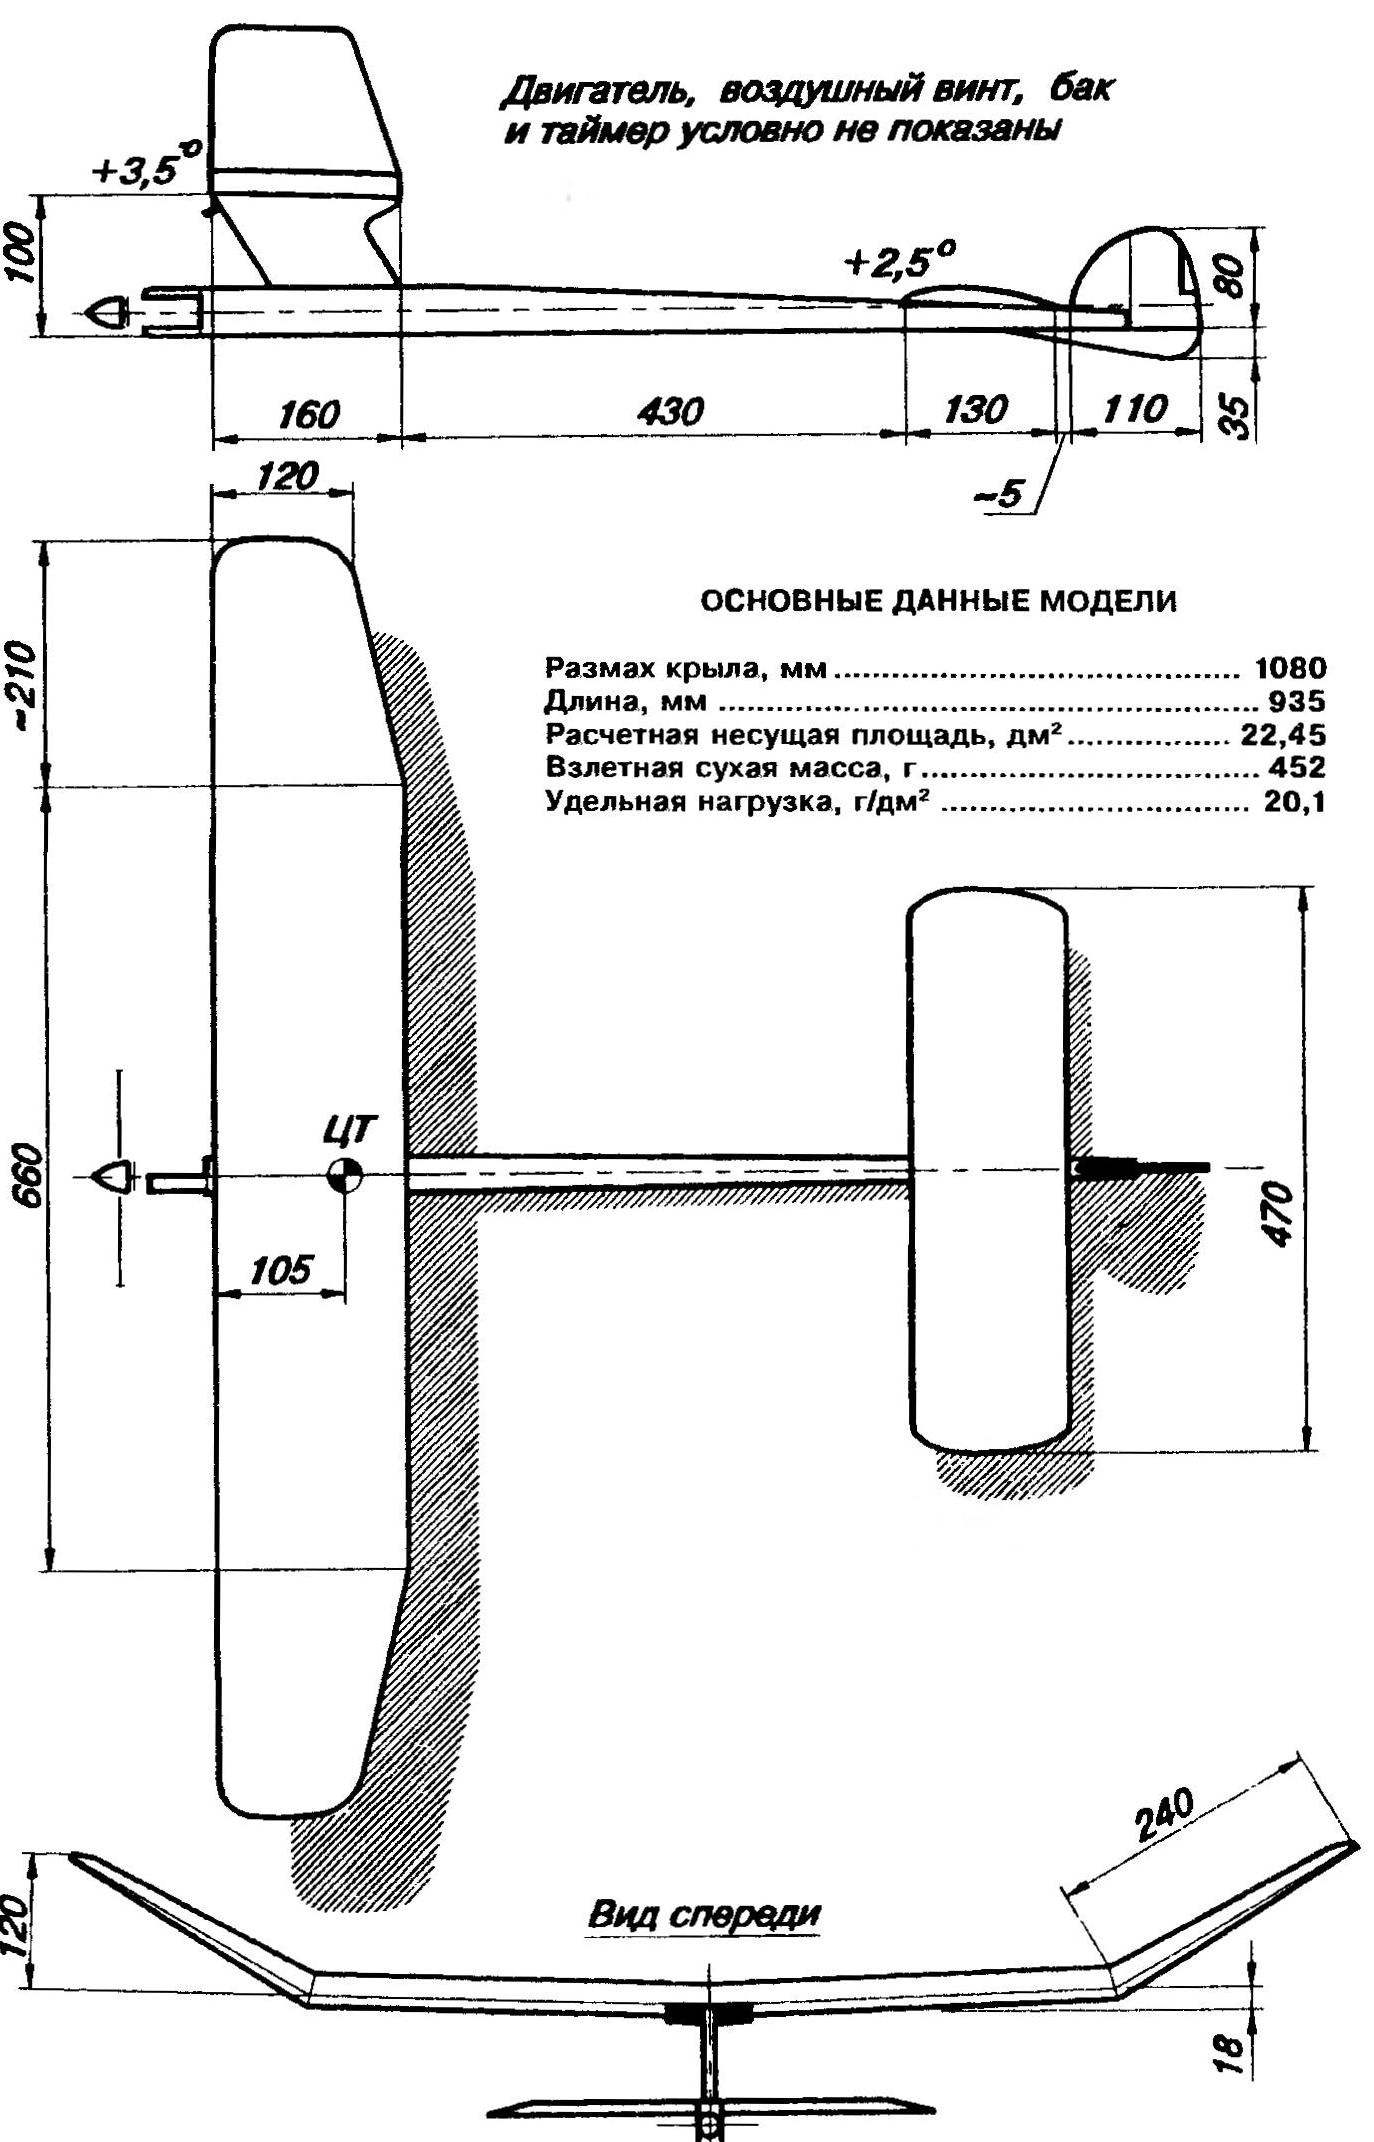 Основные геометрические параметры свободнолетающей таймерной авиамодели с двигателем внутреннего сгорания рабочим объемом 1,5 см